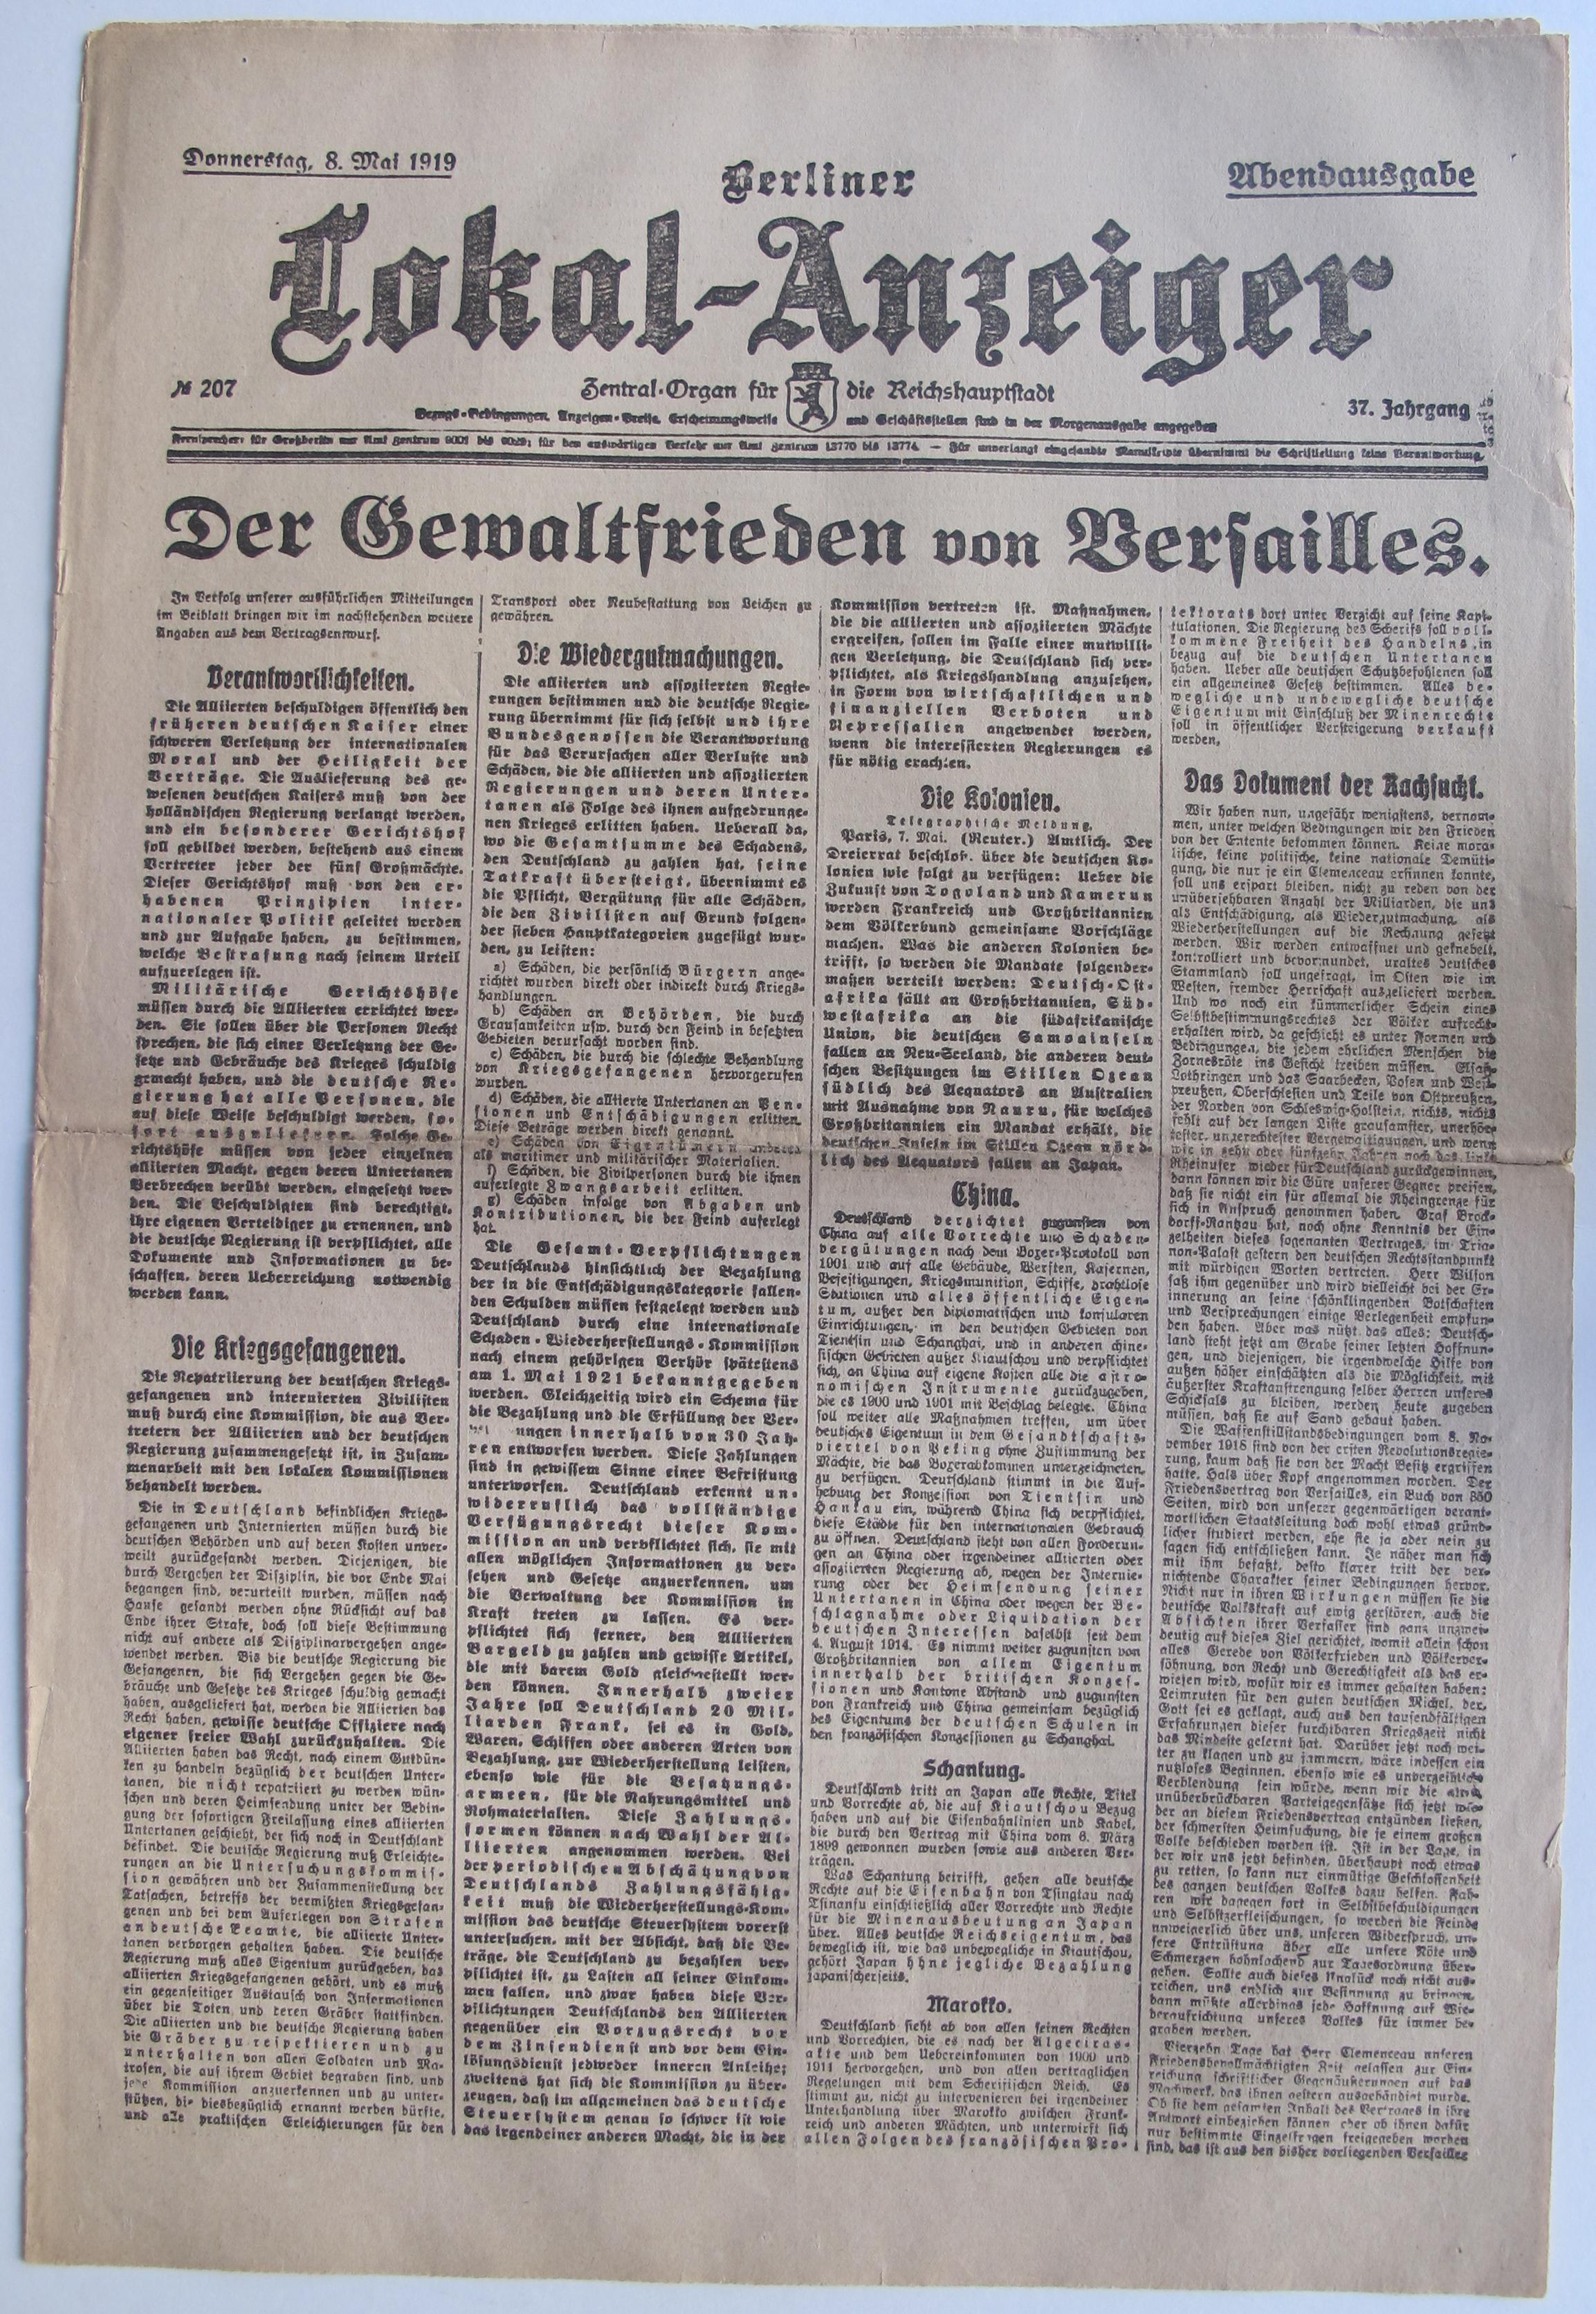 Zeitung: "Der Gewaltfrieden von Versailles" Berliner Lokal-Anzeiger, 1919